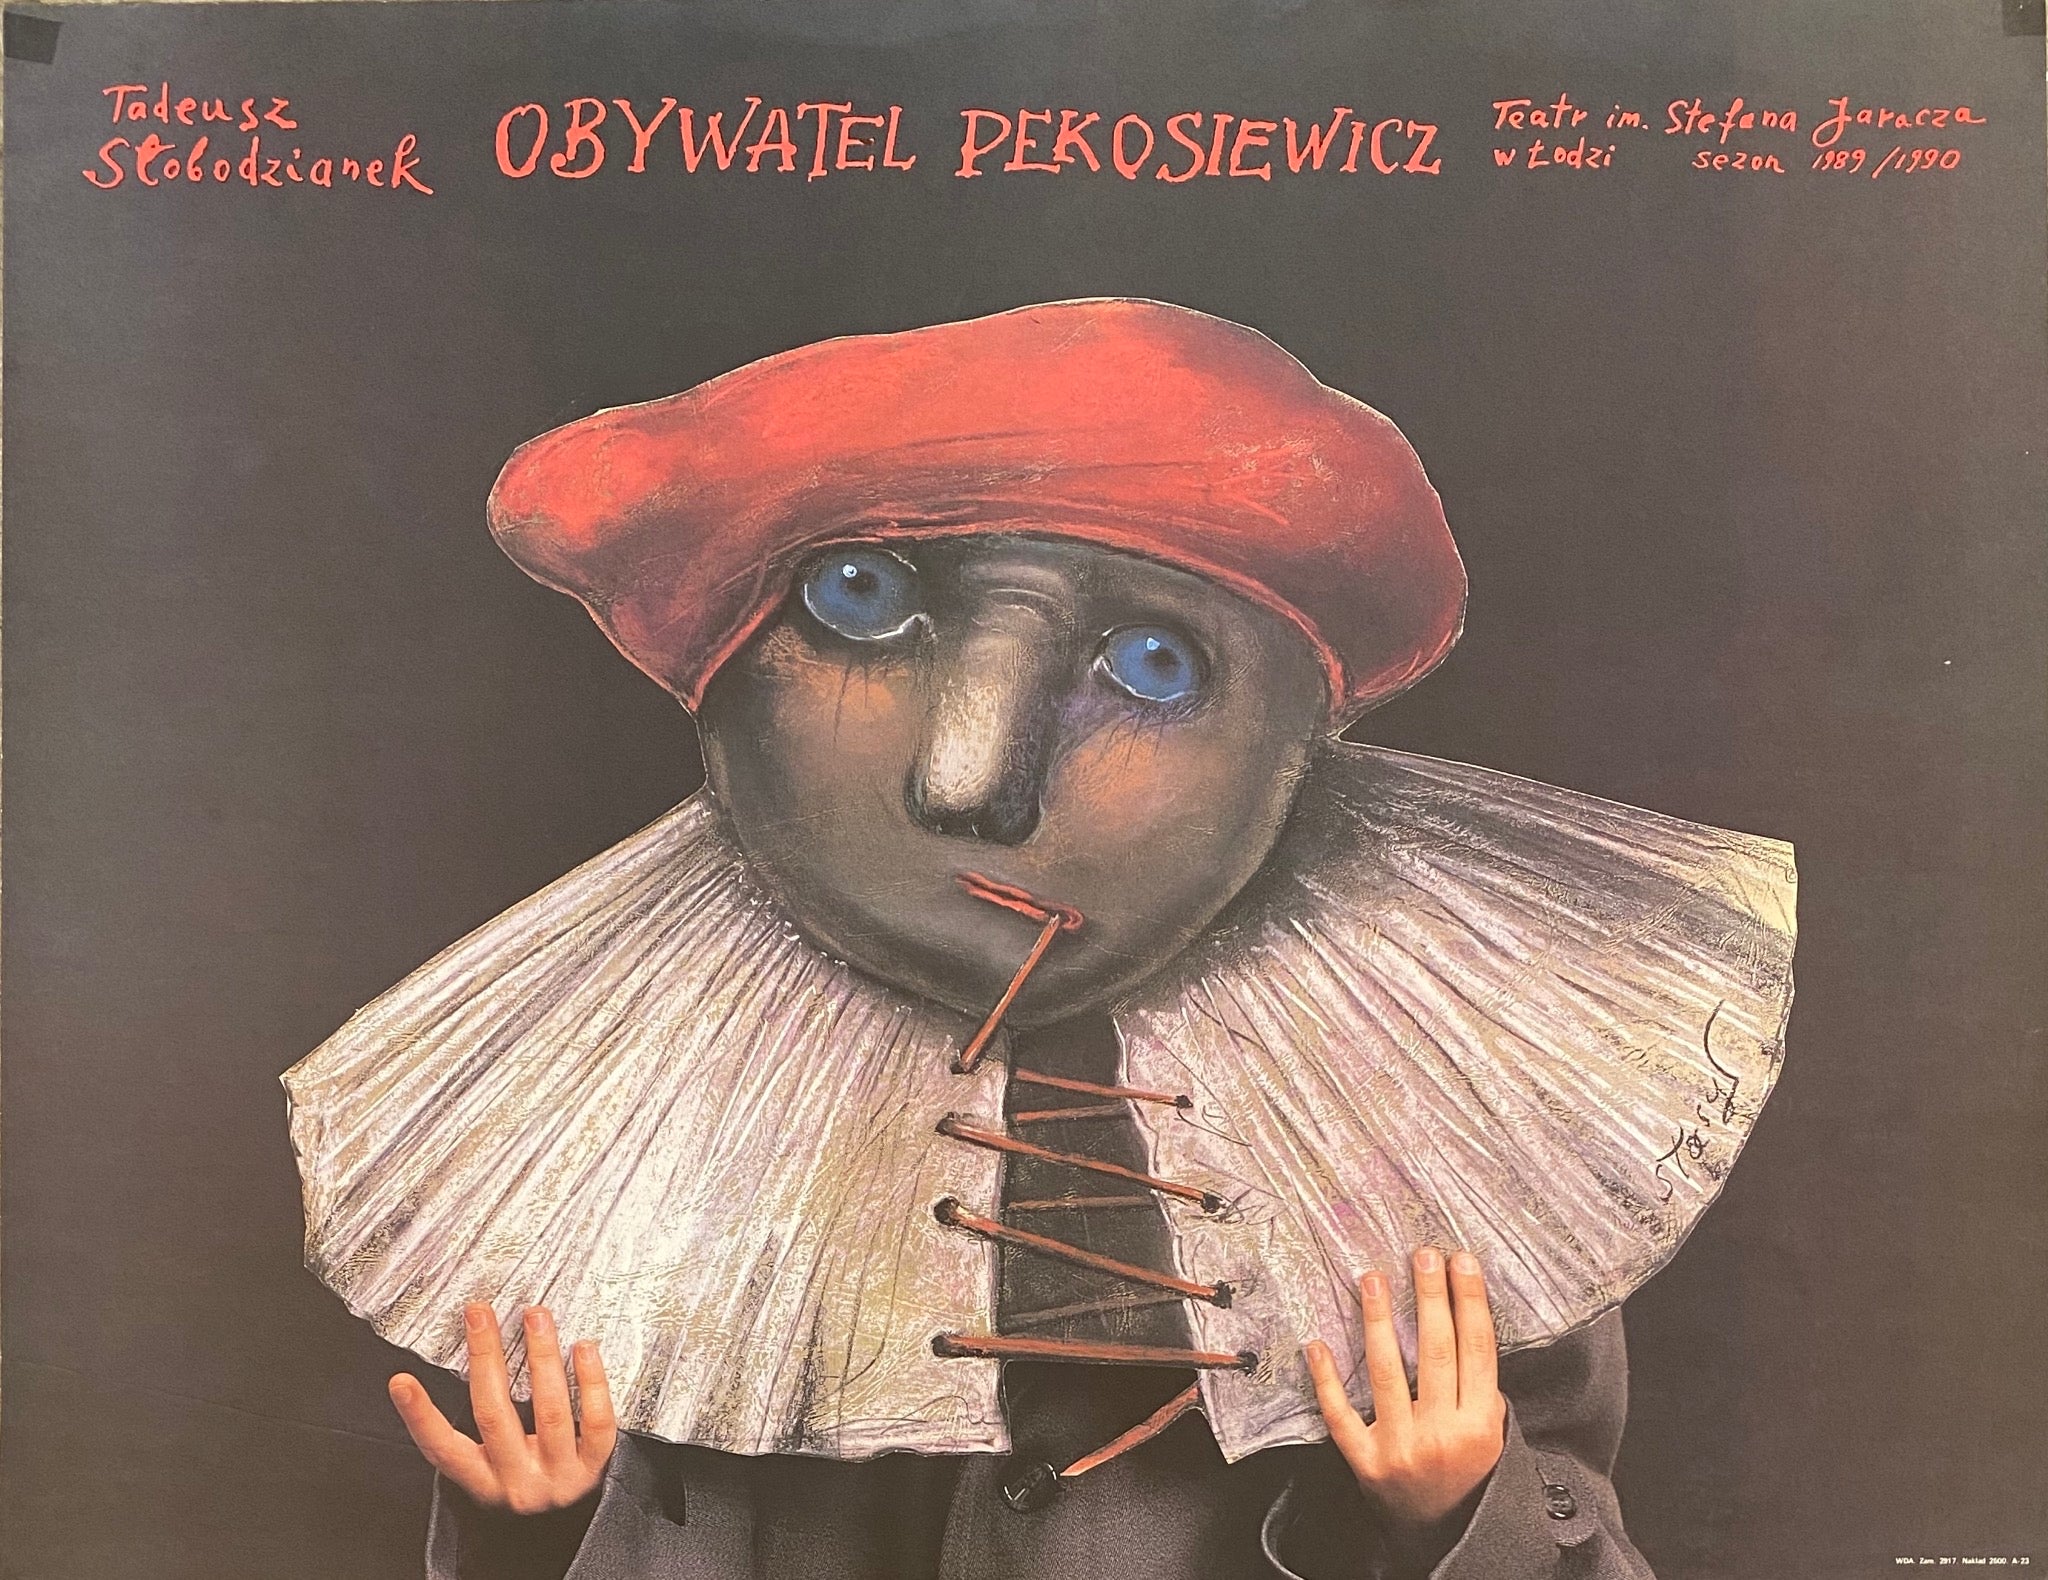 Obywatel Pekosiewicz - Stage play Creepy Stasys artwork of mask